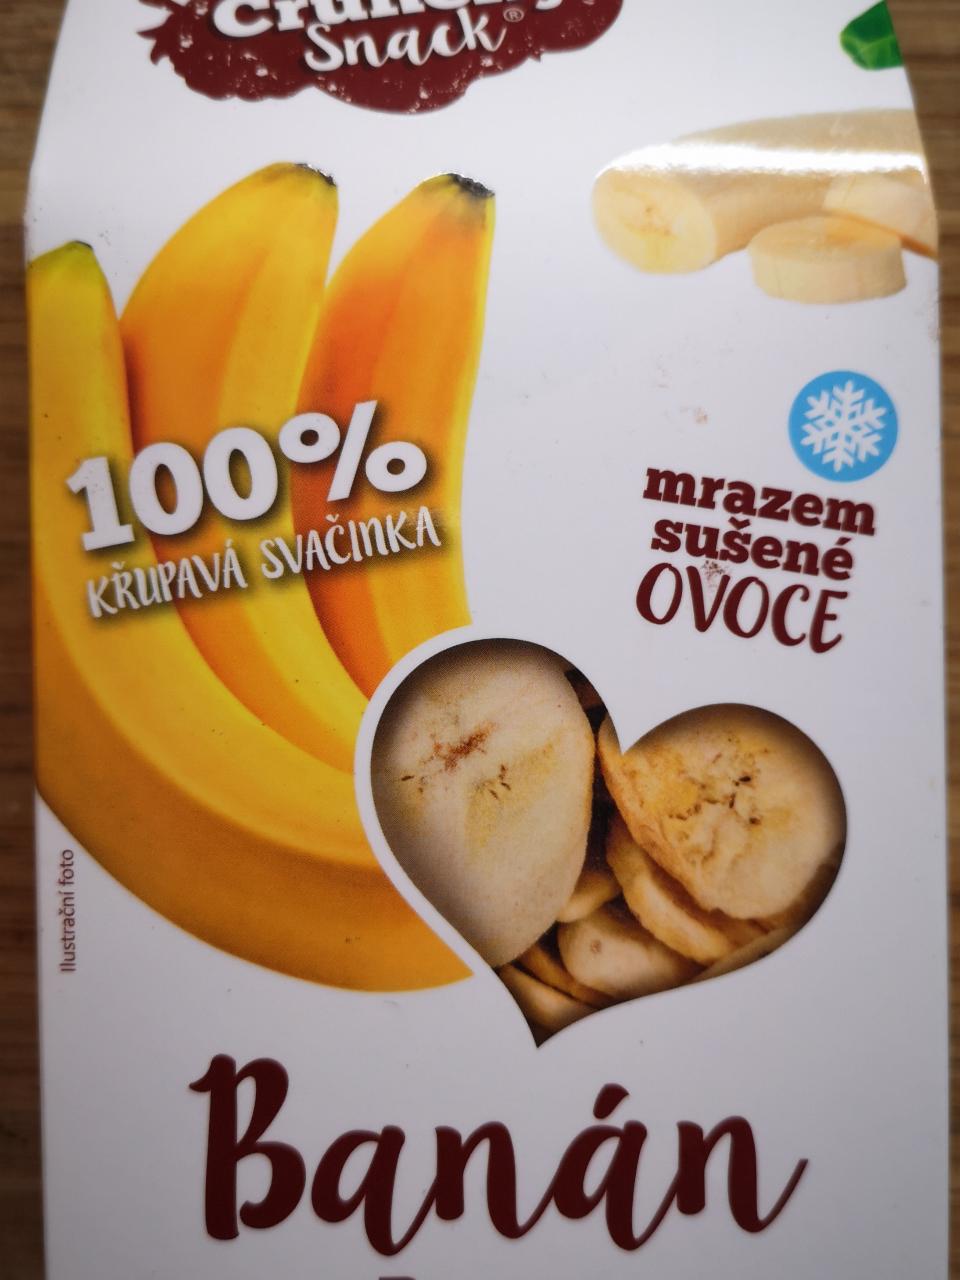 Fotografie - Mrazem sušené plátky banánů Crunchy Snack